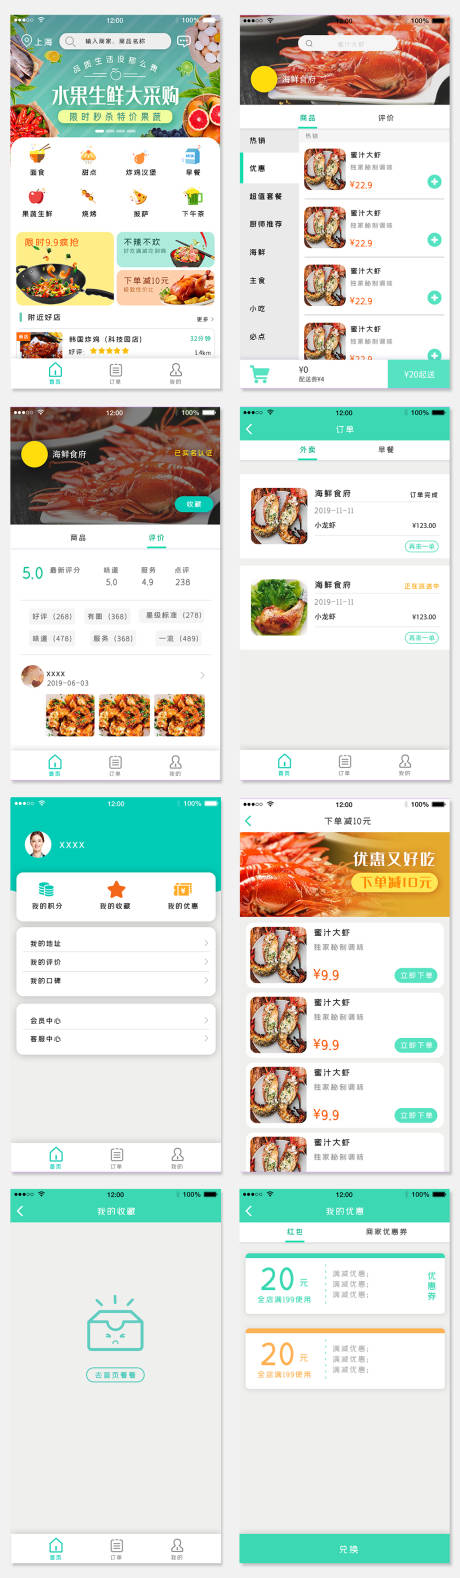 美食外卖餐厅点餐app界面设计